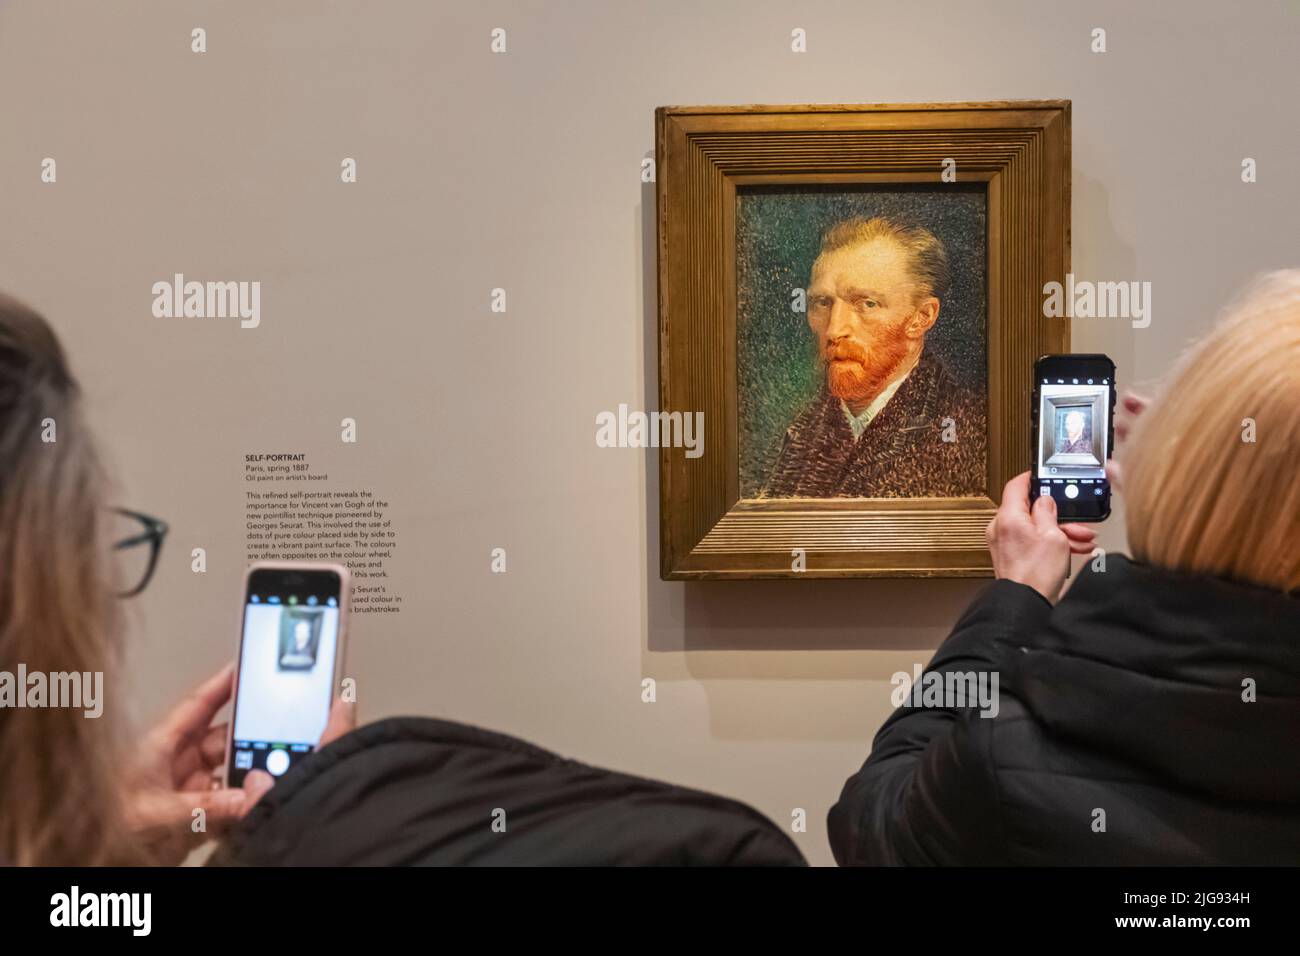 Galerie visiteurs prendre des photos avec un smartphone d'un portrait de Vincent van Gogh peinture Banque D'Images